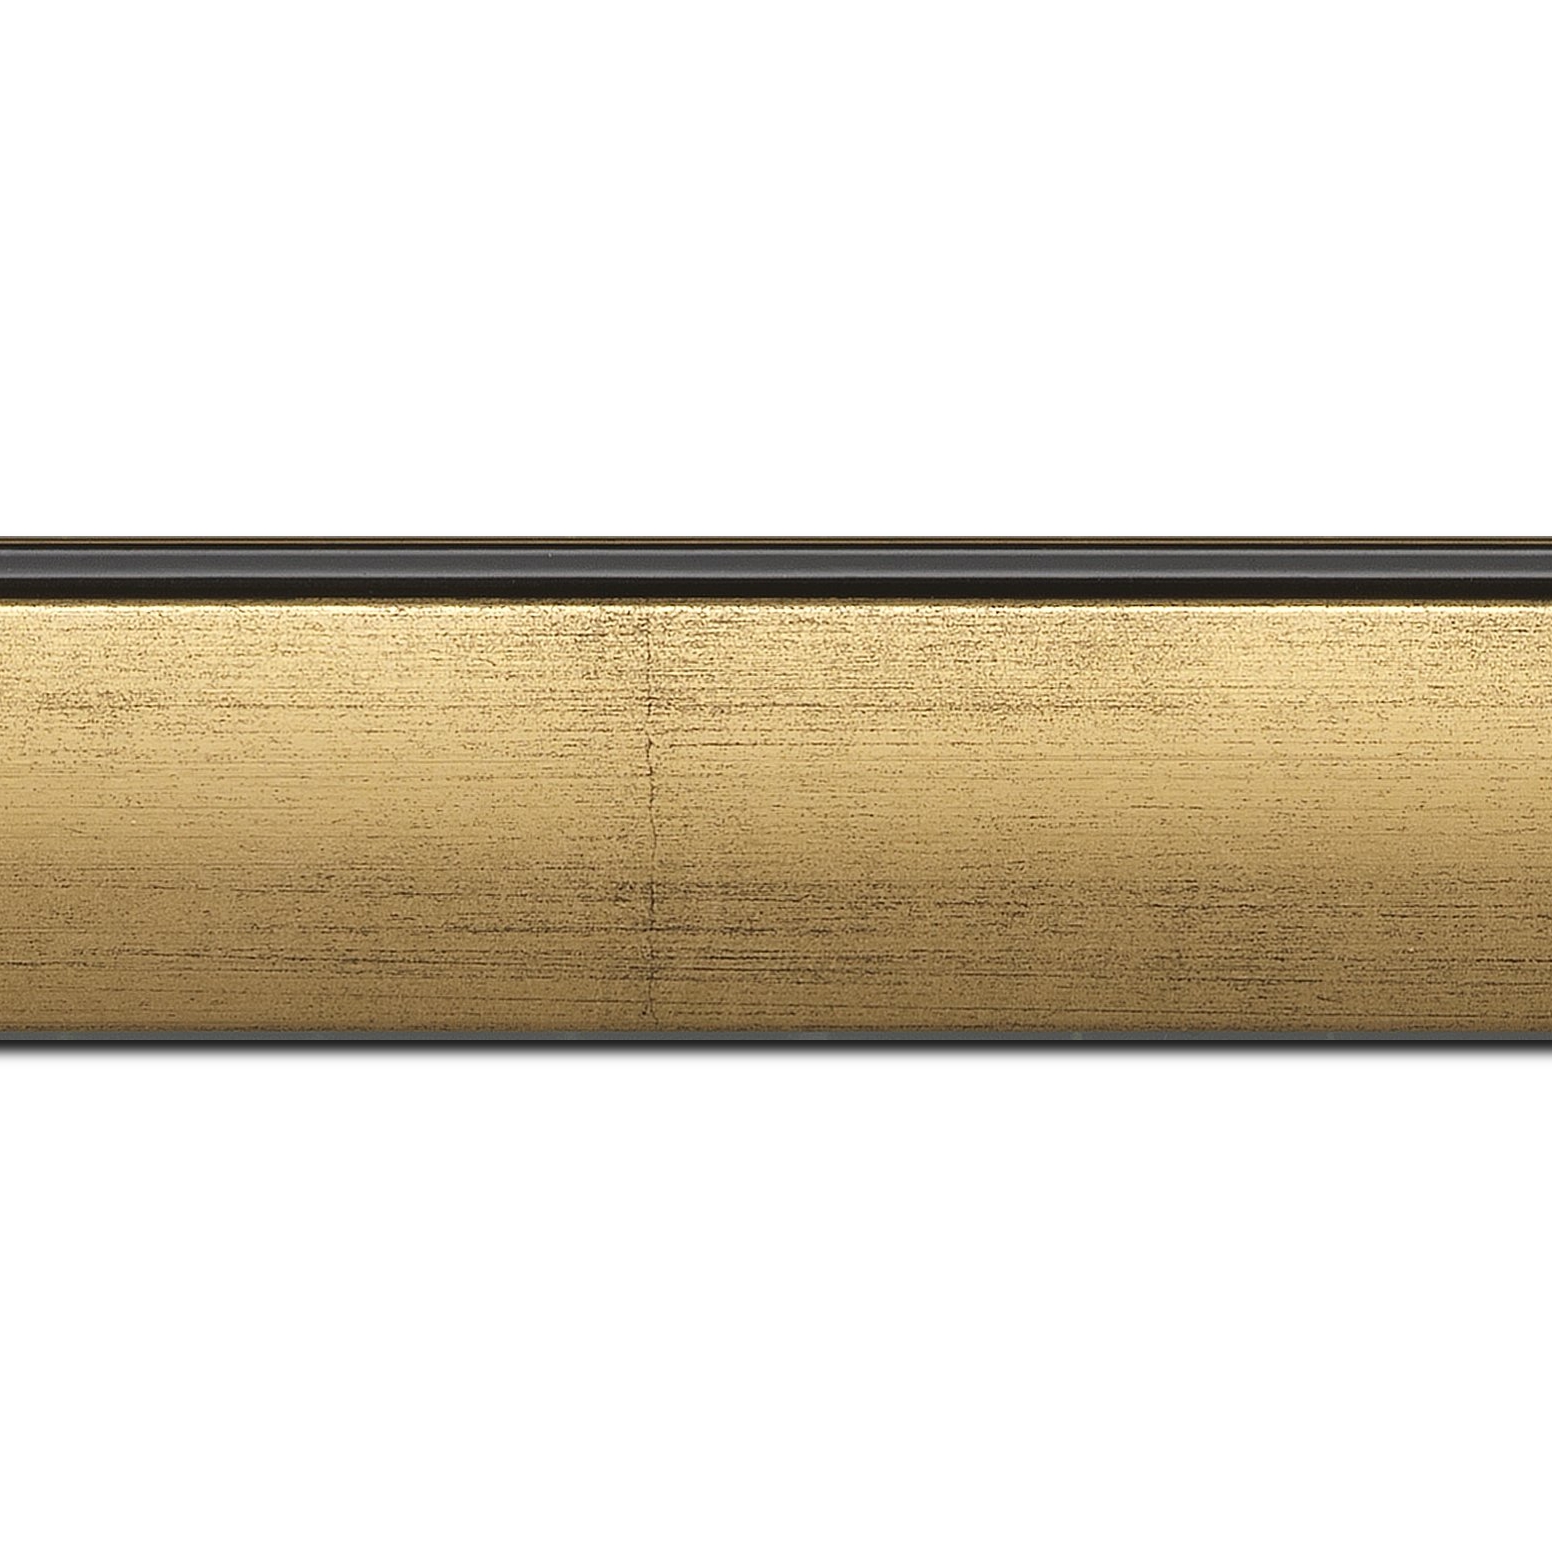 Baguette longueur 1.40m bois profil en pente méplat largeur 4.8cm or satiné surligné par une gorge extérieure noire : originalité et élégance assurée